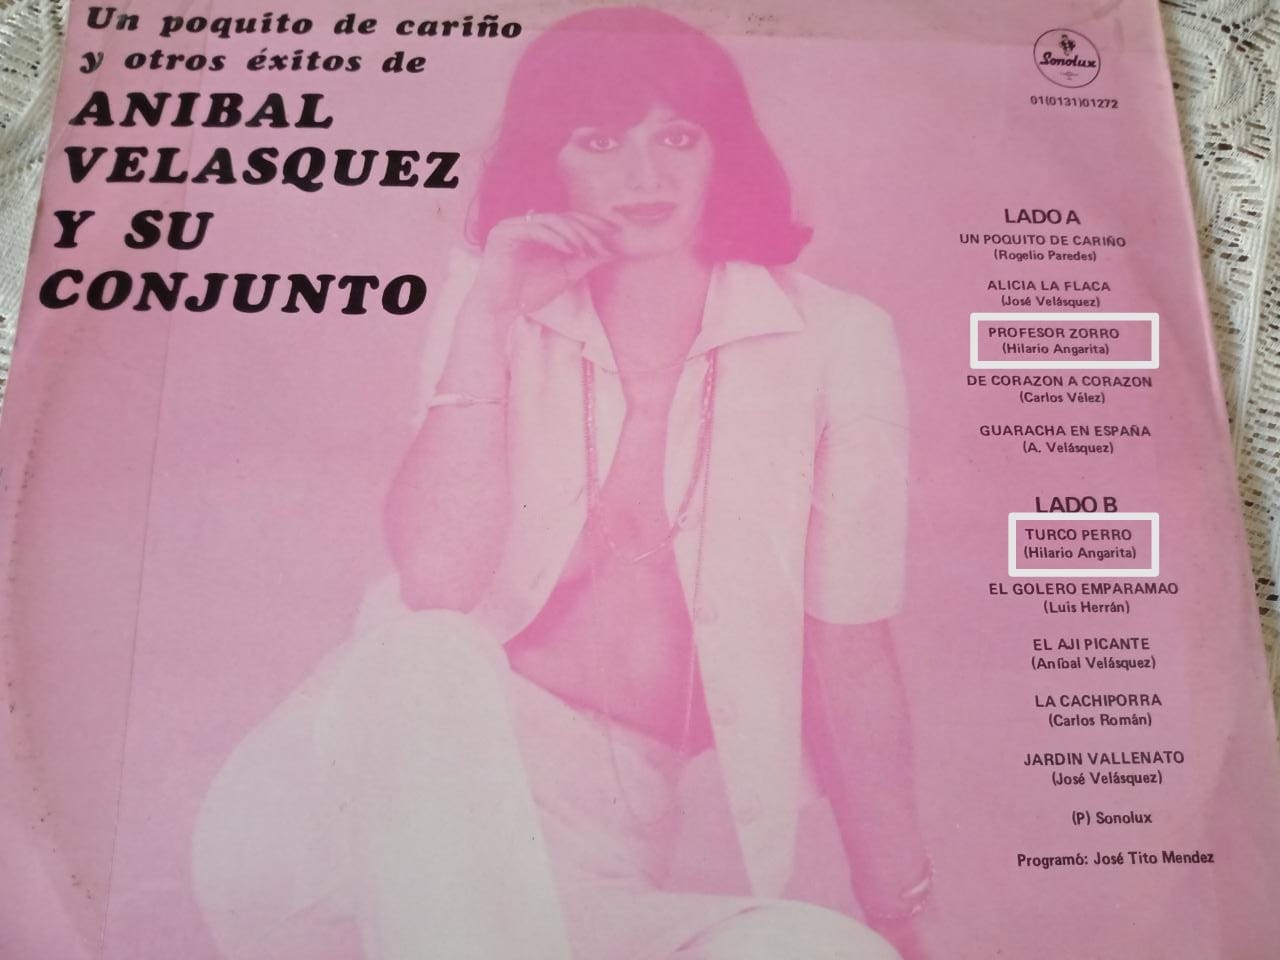 Carátula de uno de los discos de Aníbal Velásquez en los que aparece el ‘Turco perro’.